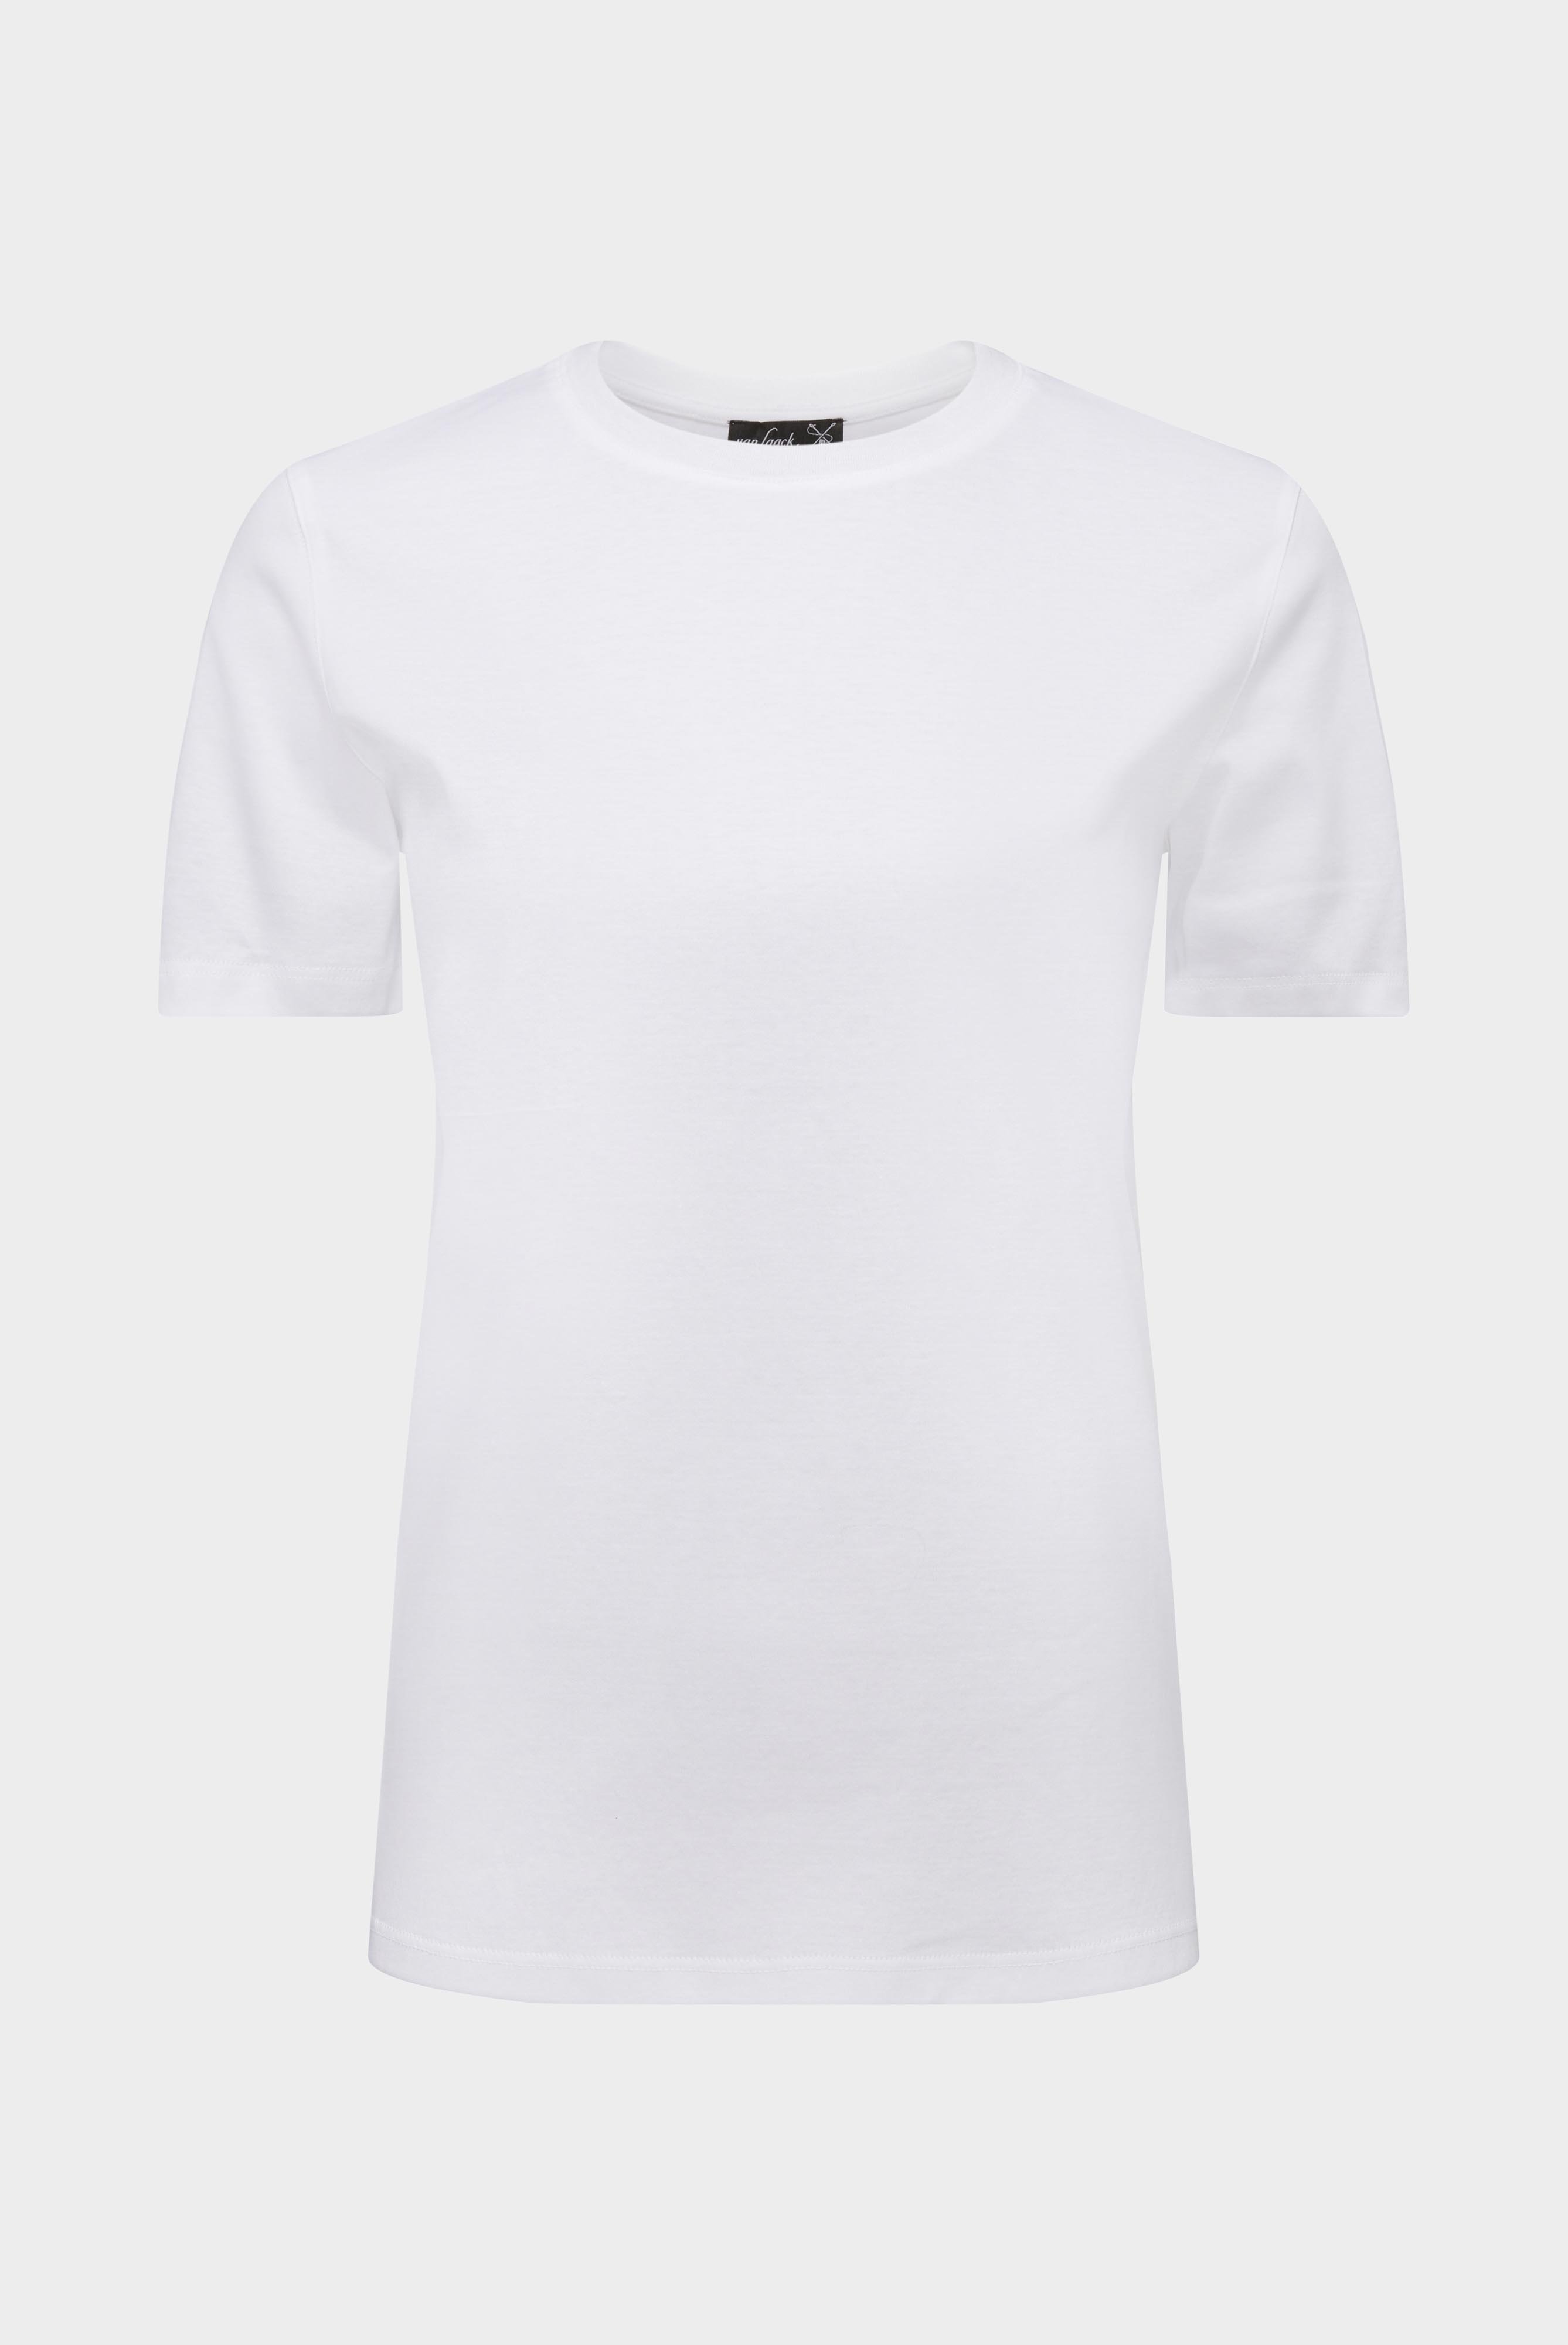 Tops & T-Shirts+Jersey T-Shirt+05.6384.18.180031.000.40